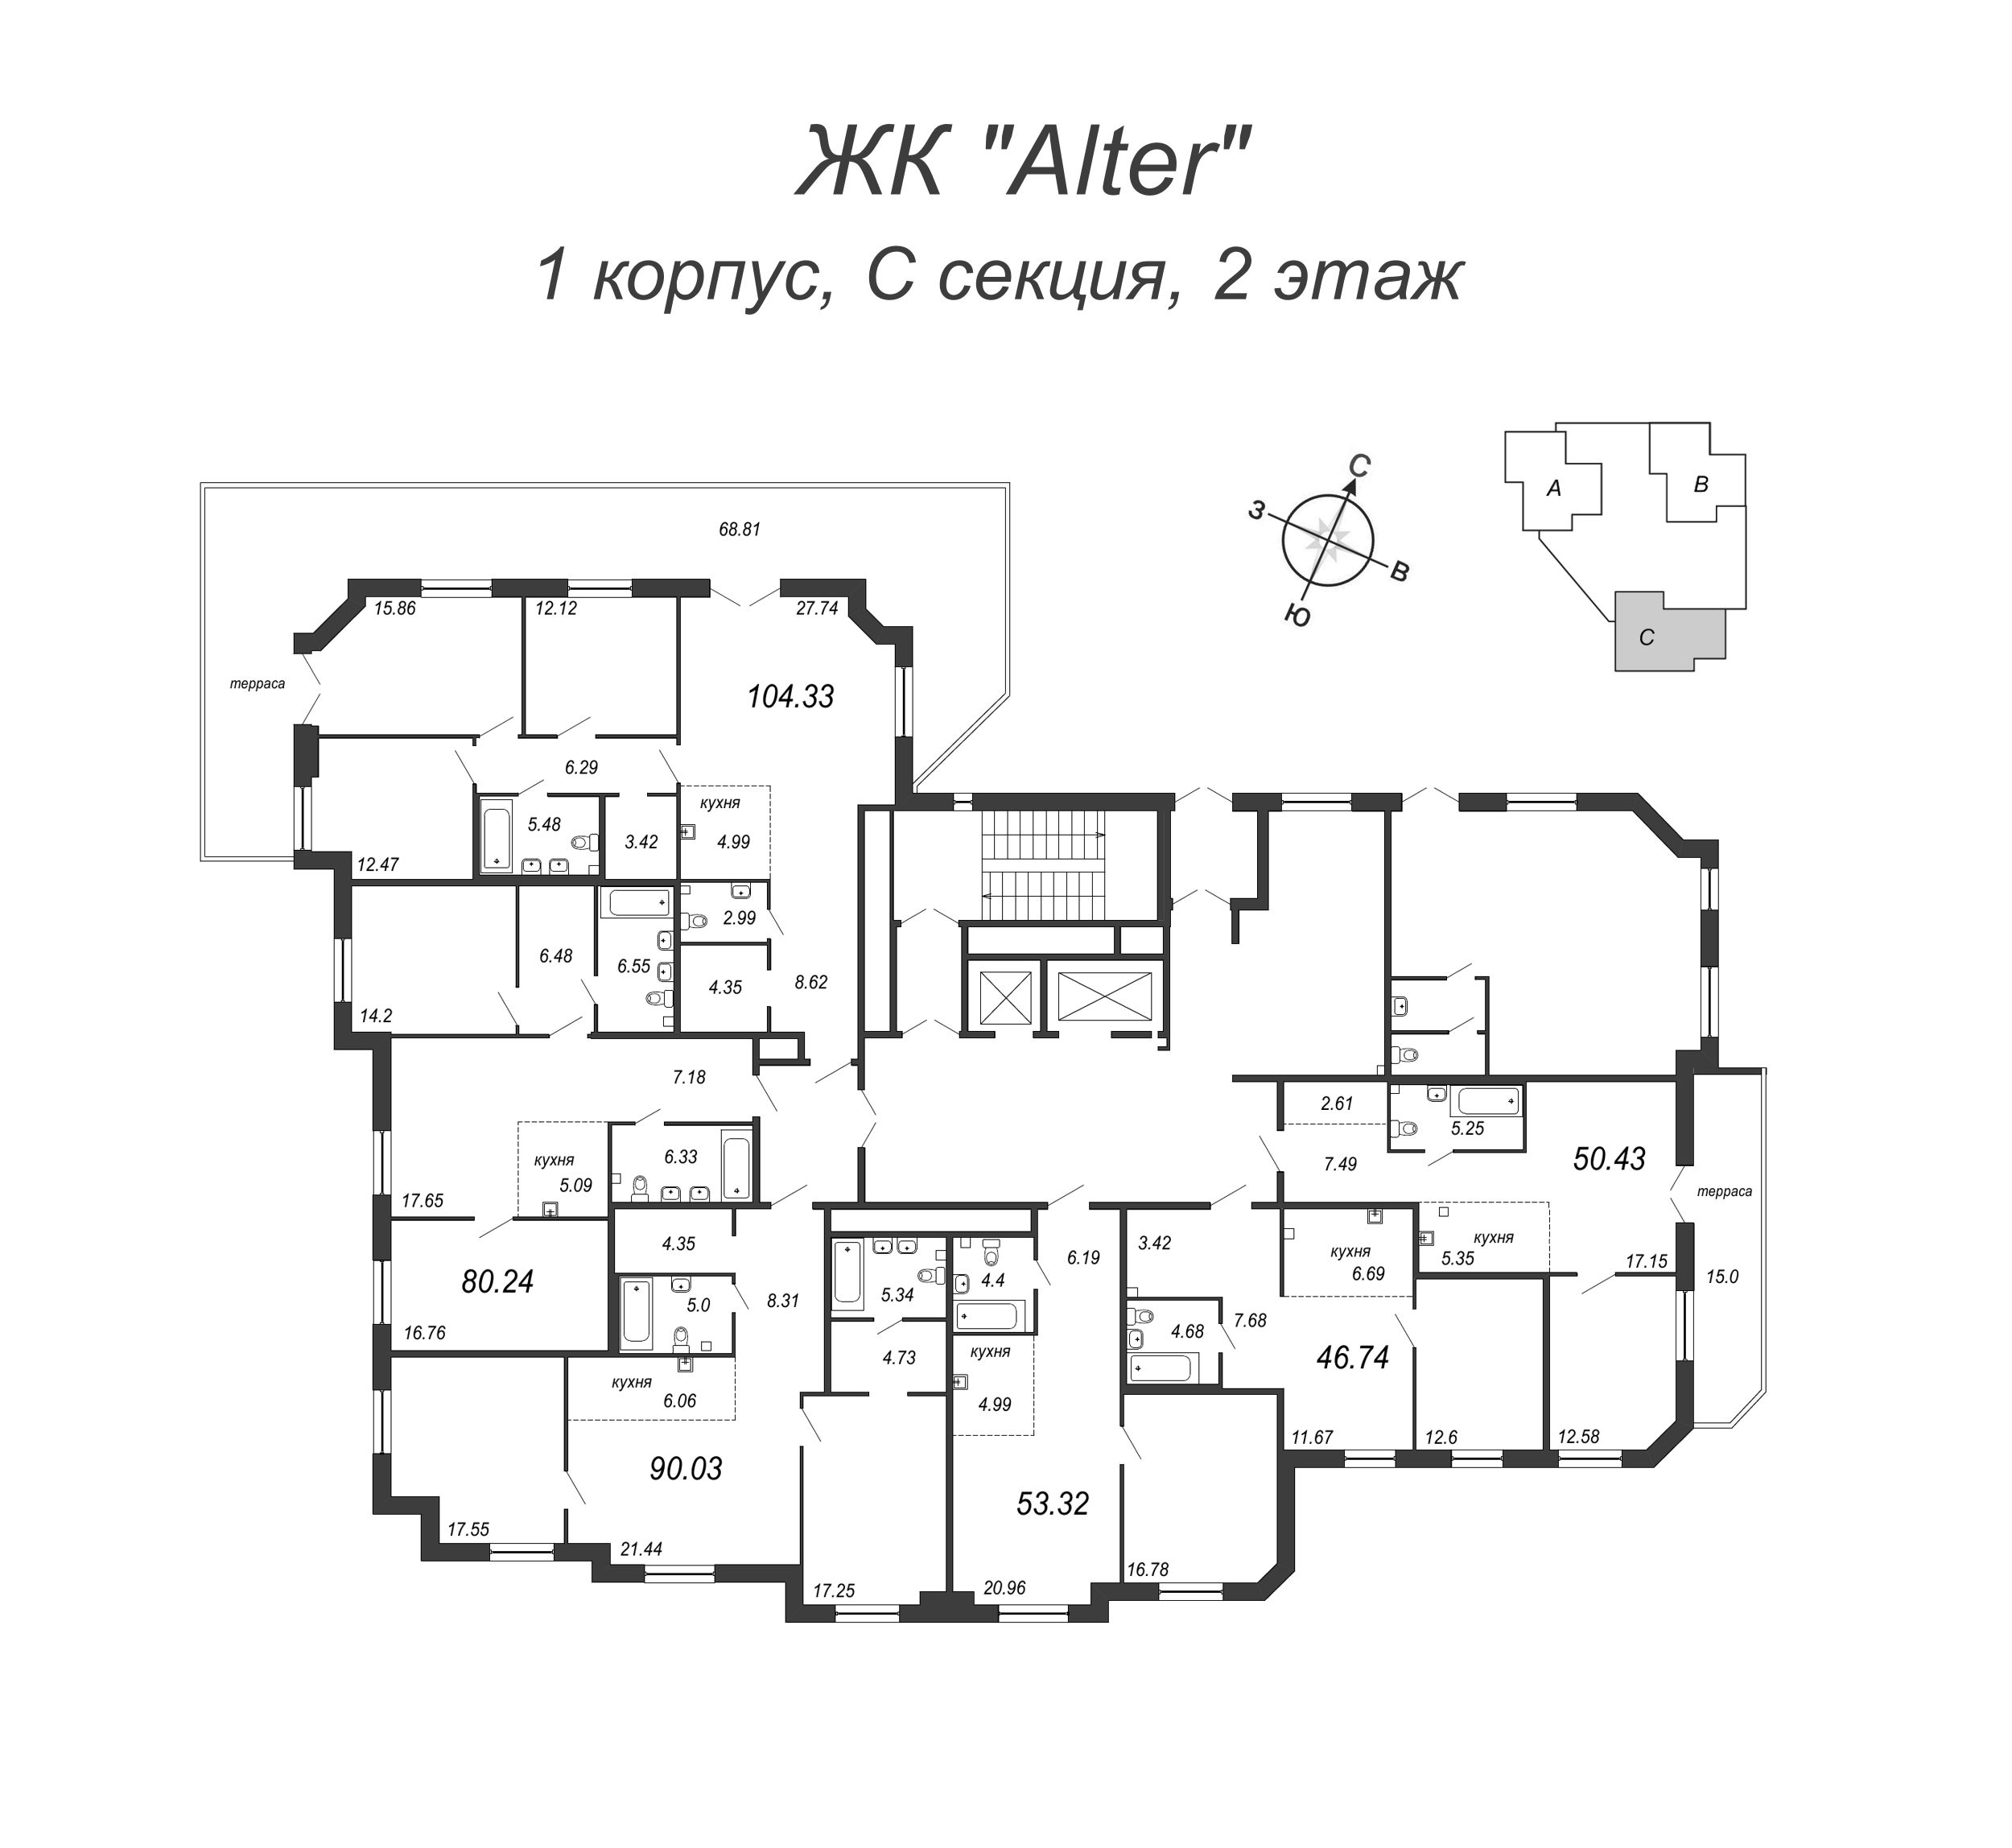 4-комнатная (Евро) квартира, 124.8 м² в ЖК "Alter" - планировка этажа